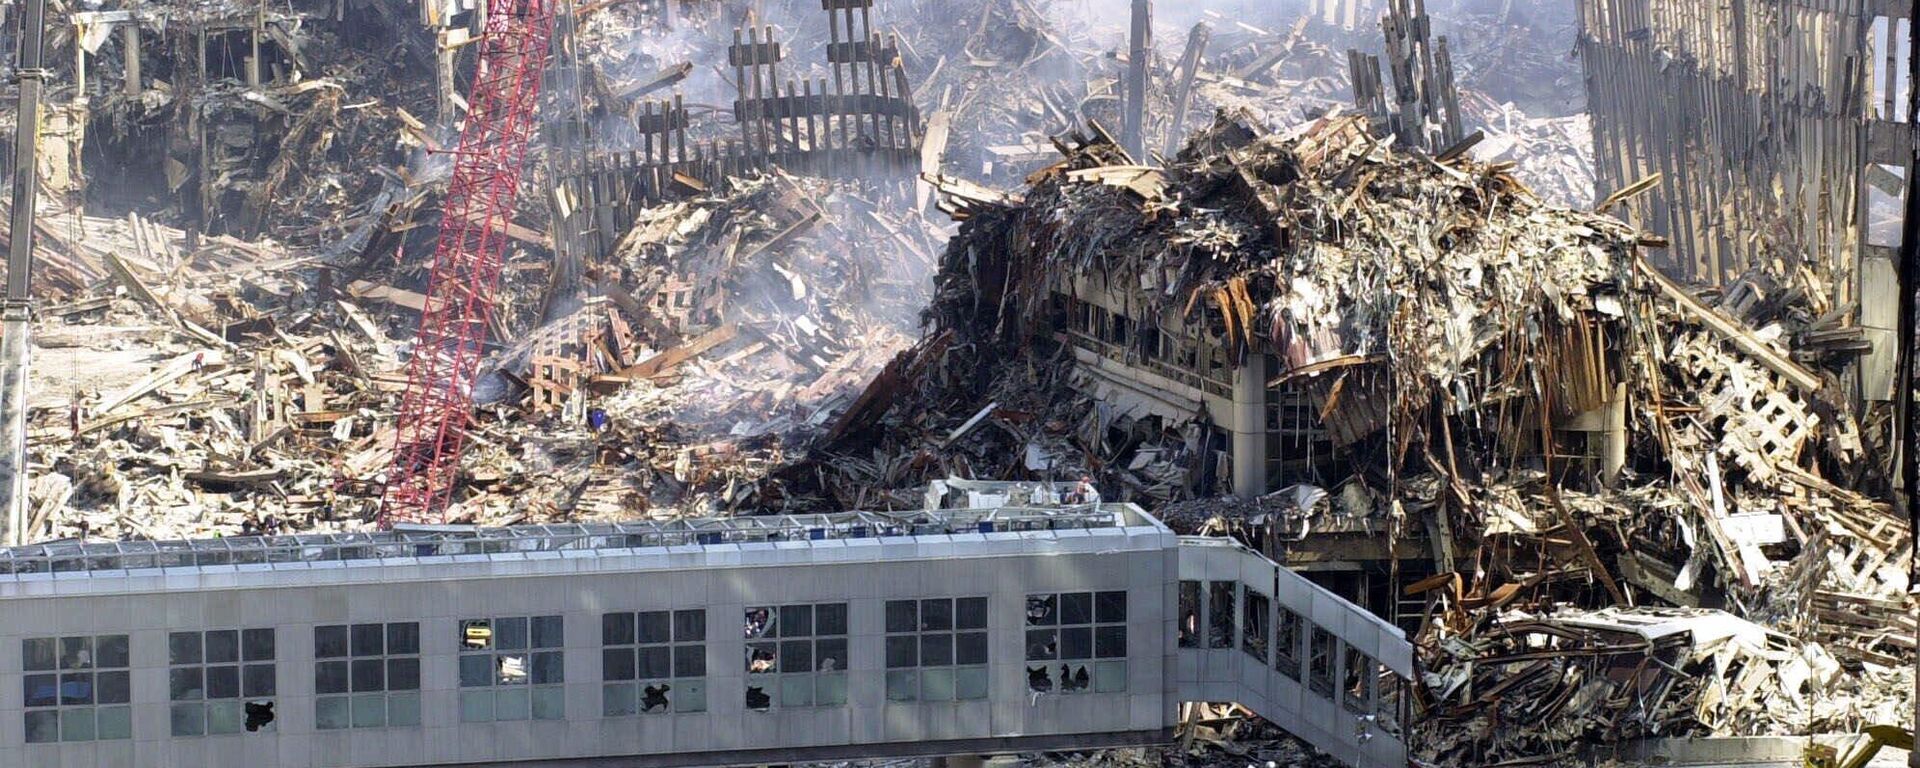 Вид сверху на разрушения после атаки на Всемирный торговый центр в США  - Sputnik Mundo, 1920, 11.09.2022